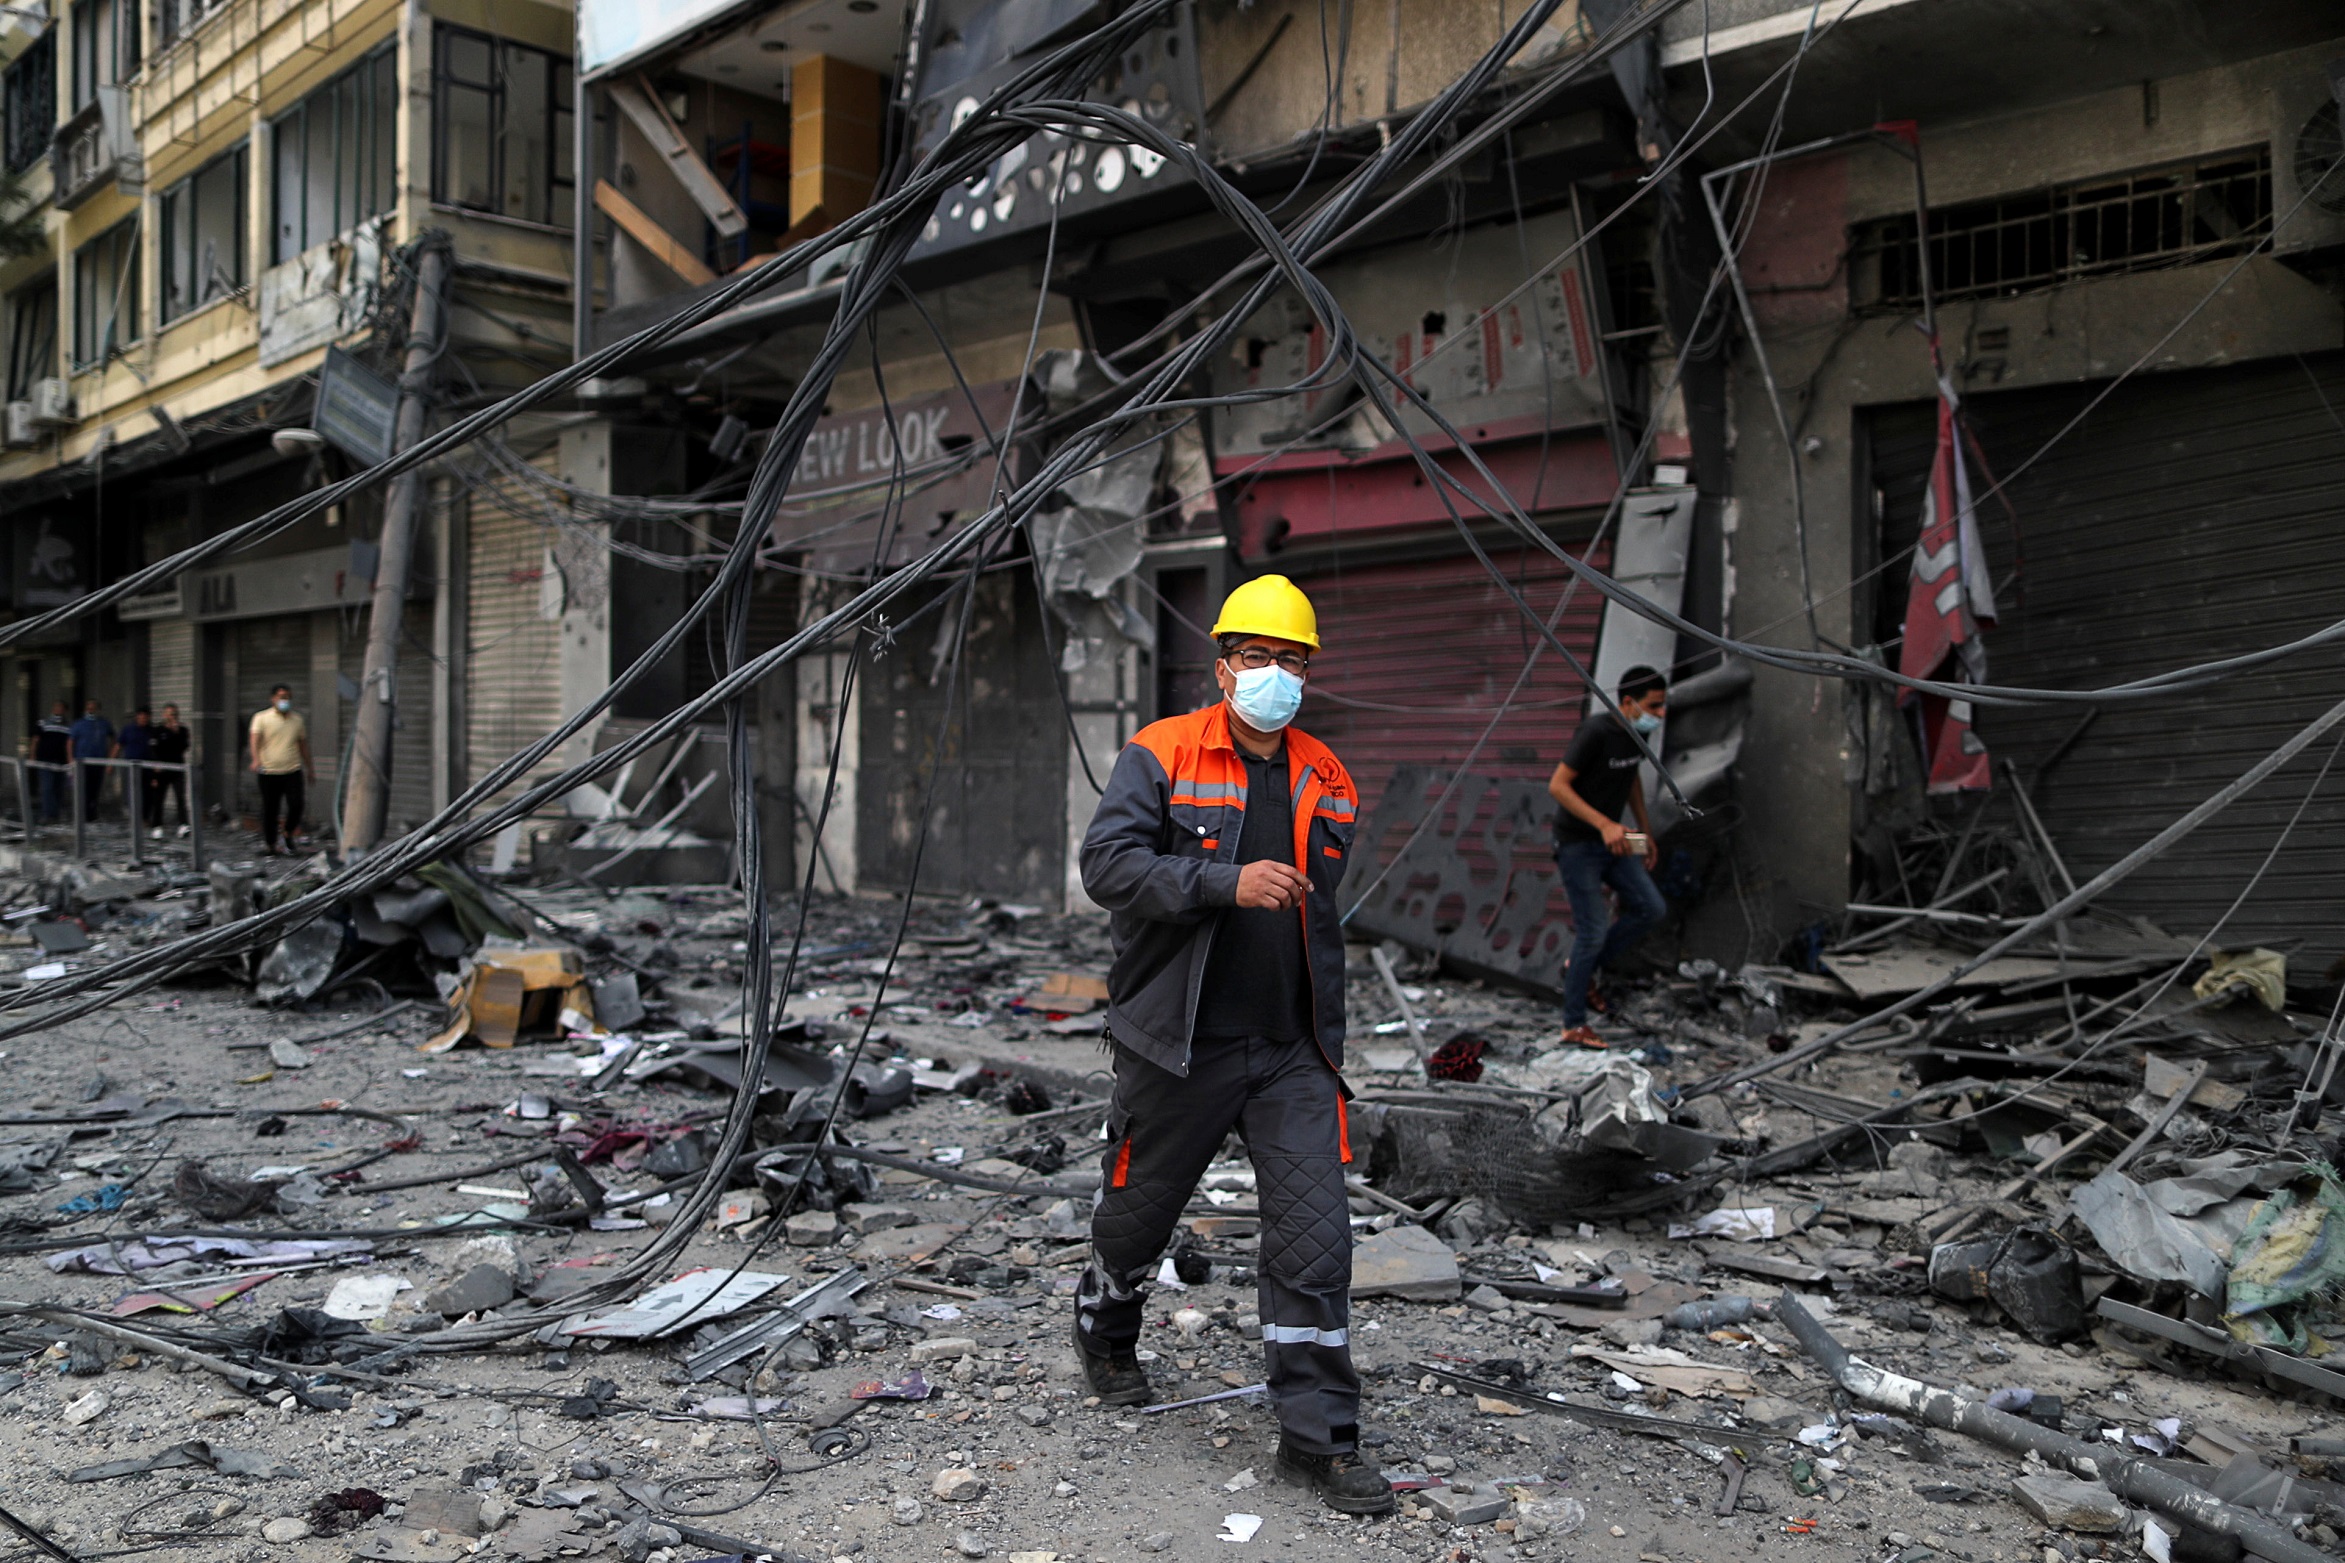 موظف كهرباء في الموقع الذي دمر فيه مبنى برج في غارات جوية إسرائيلية في مدينة غزة، 13 أيار/مايو 2021. (صهيب سالم / رويترز)